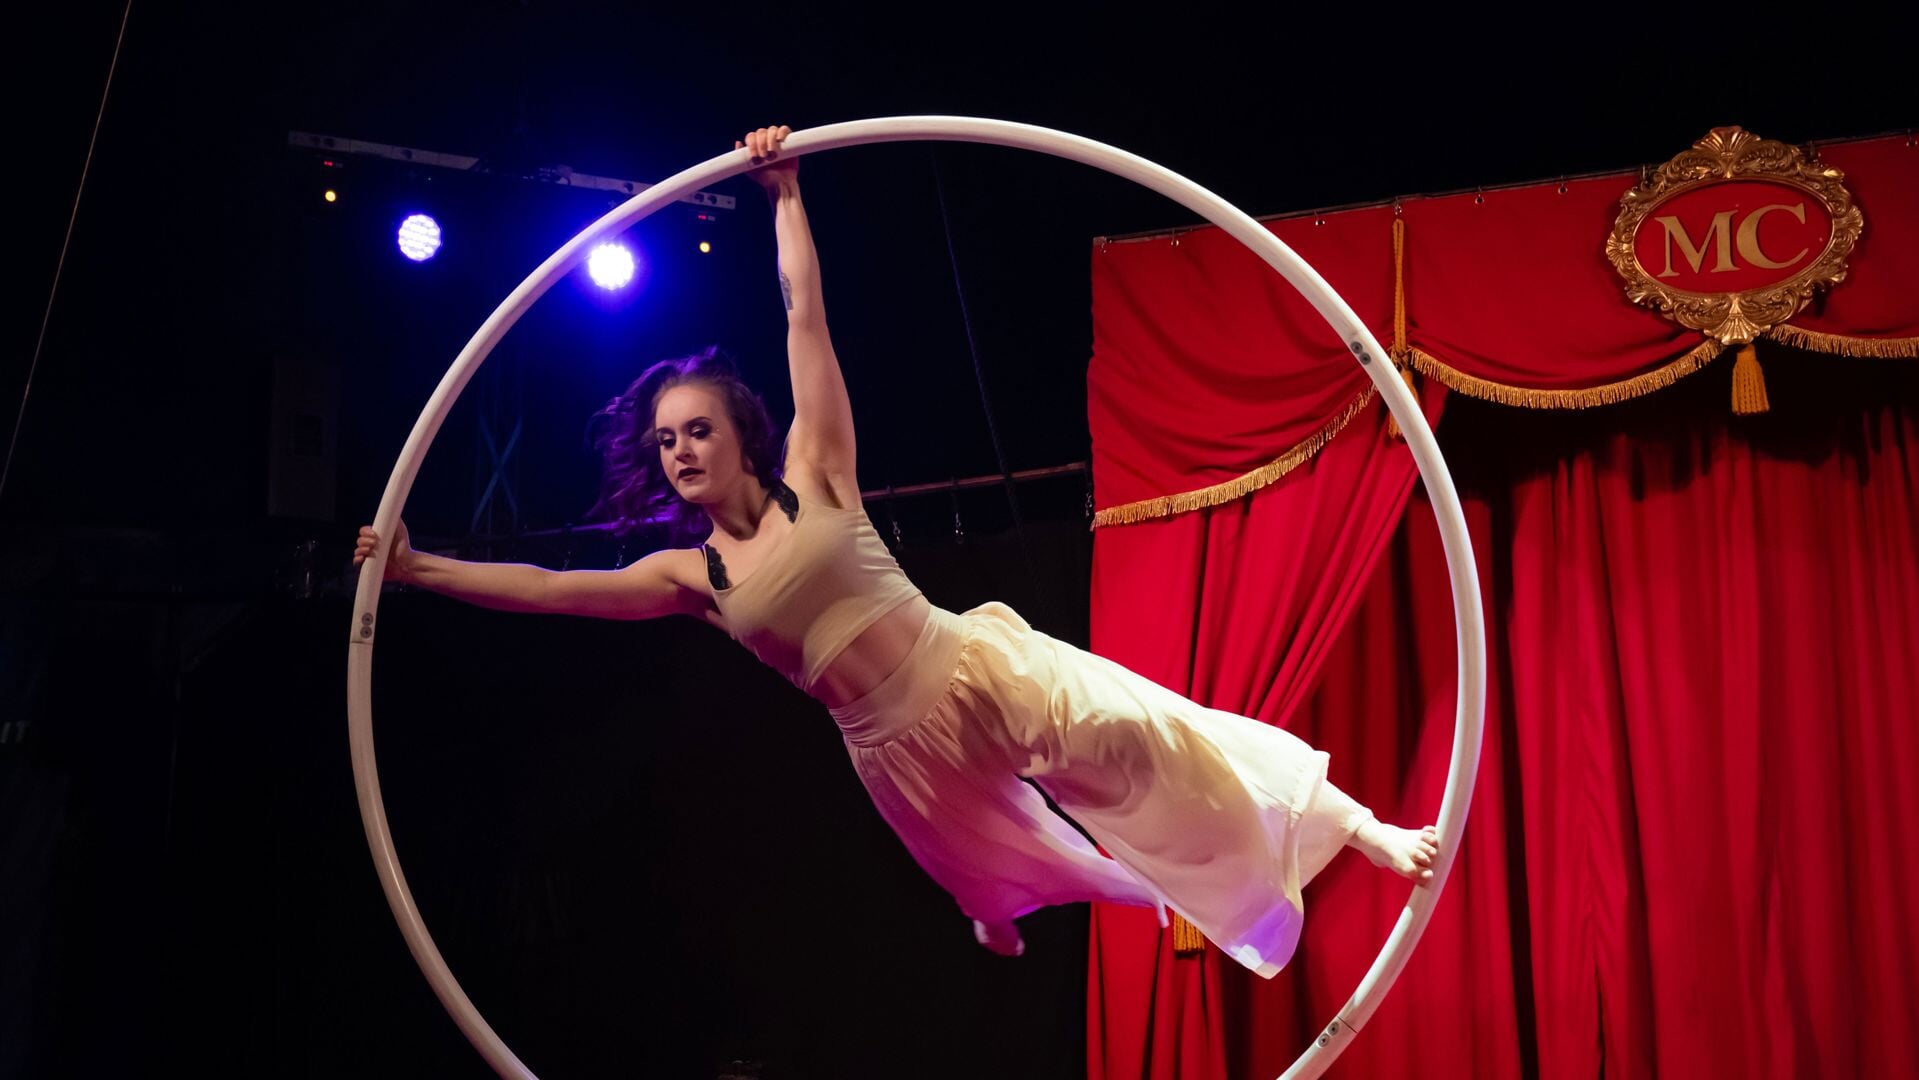 Magic Circus: een circustent vol nieuwe belevenissen.